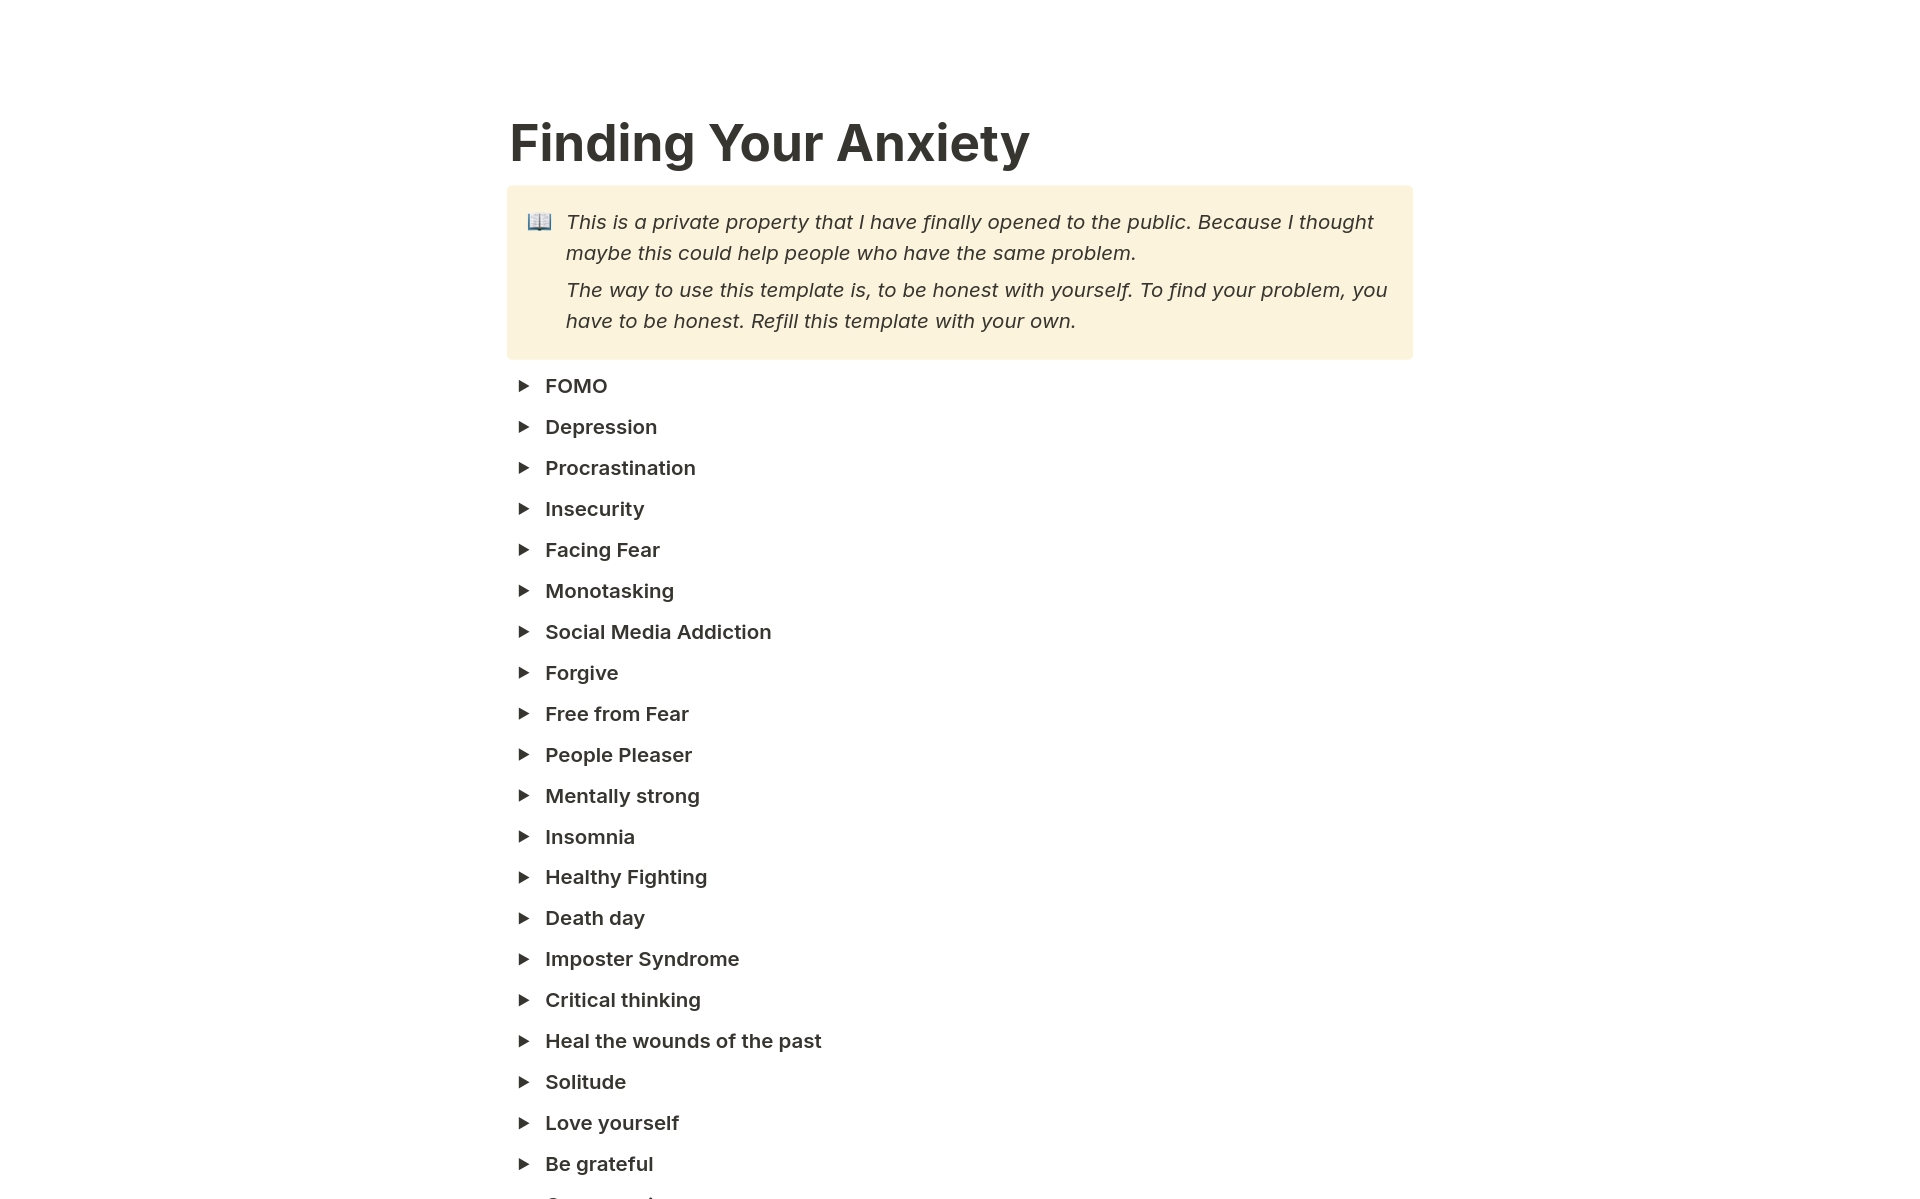 Aperçu du modèle de Finding Your Anxiety